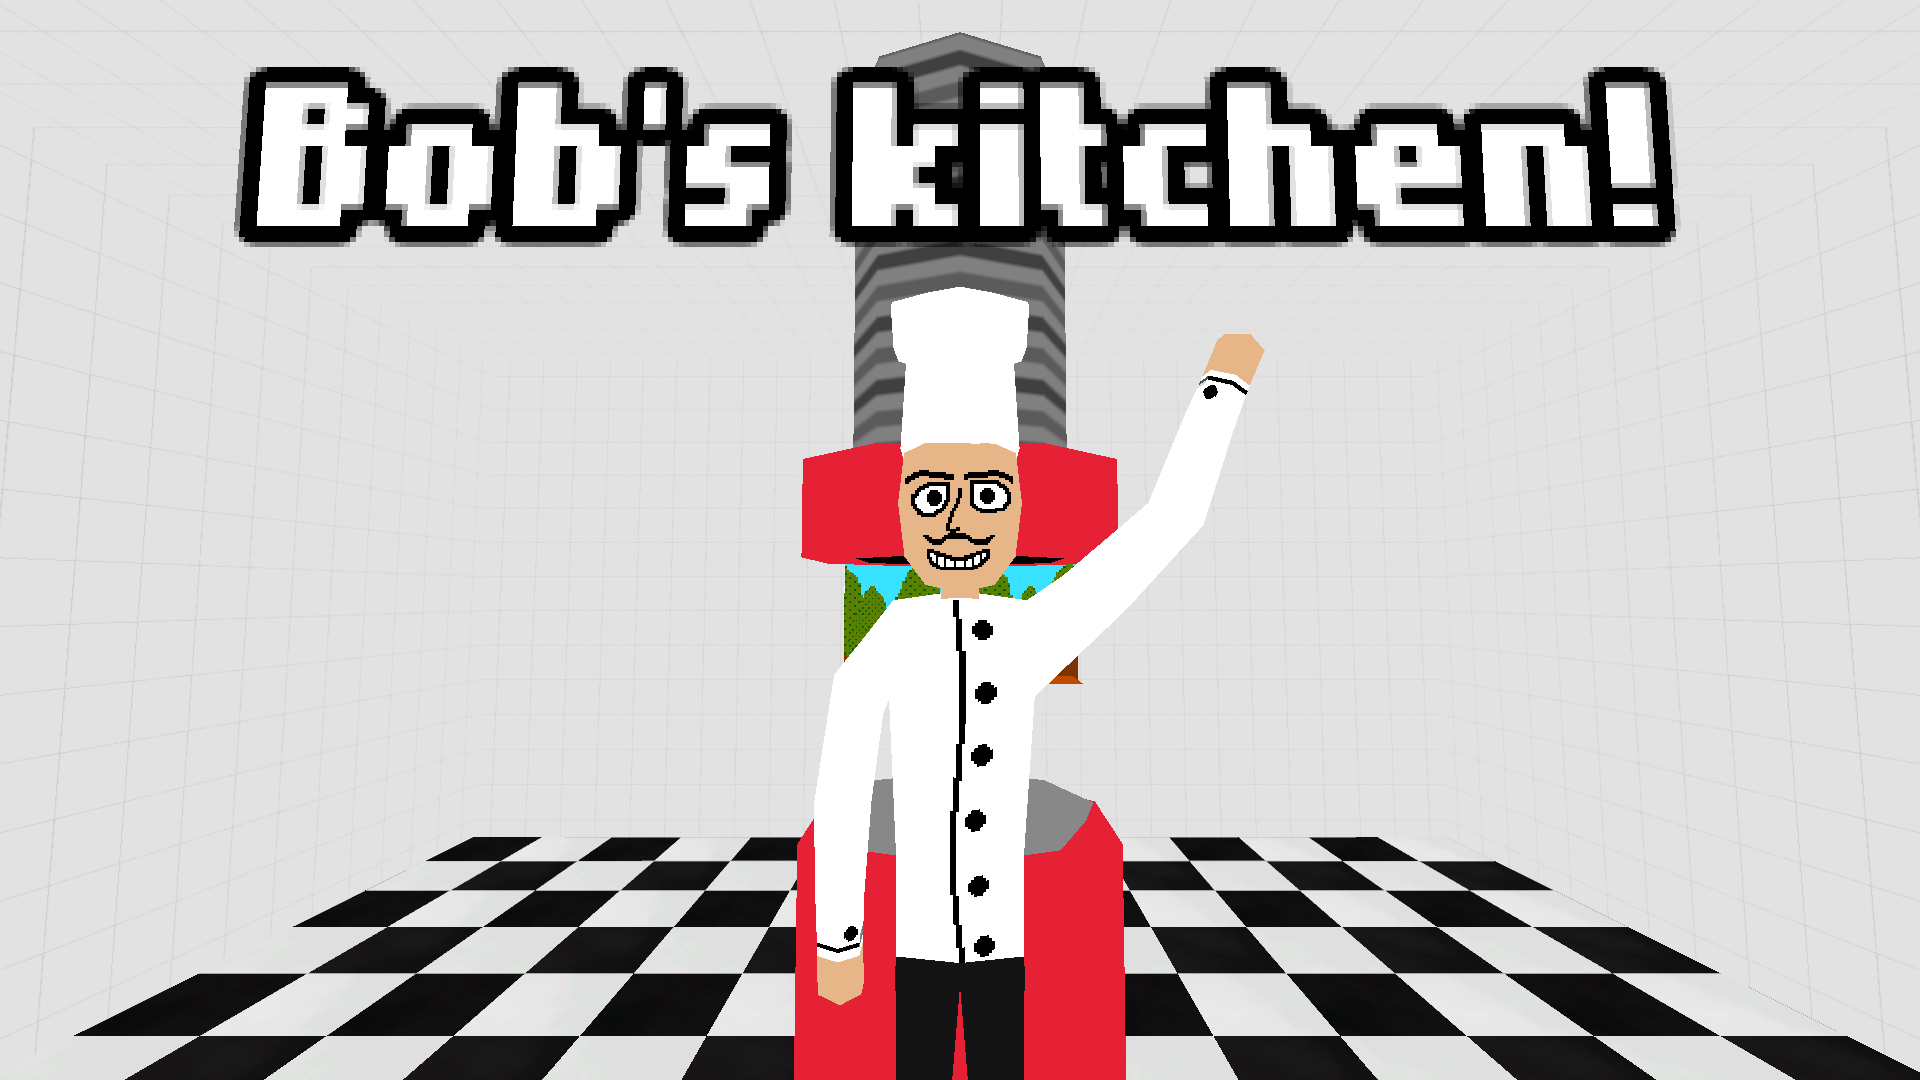 Bob's kitchen